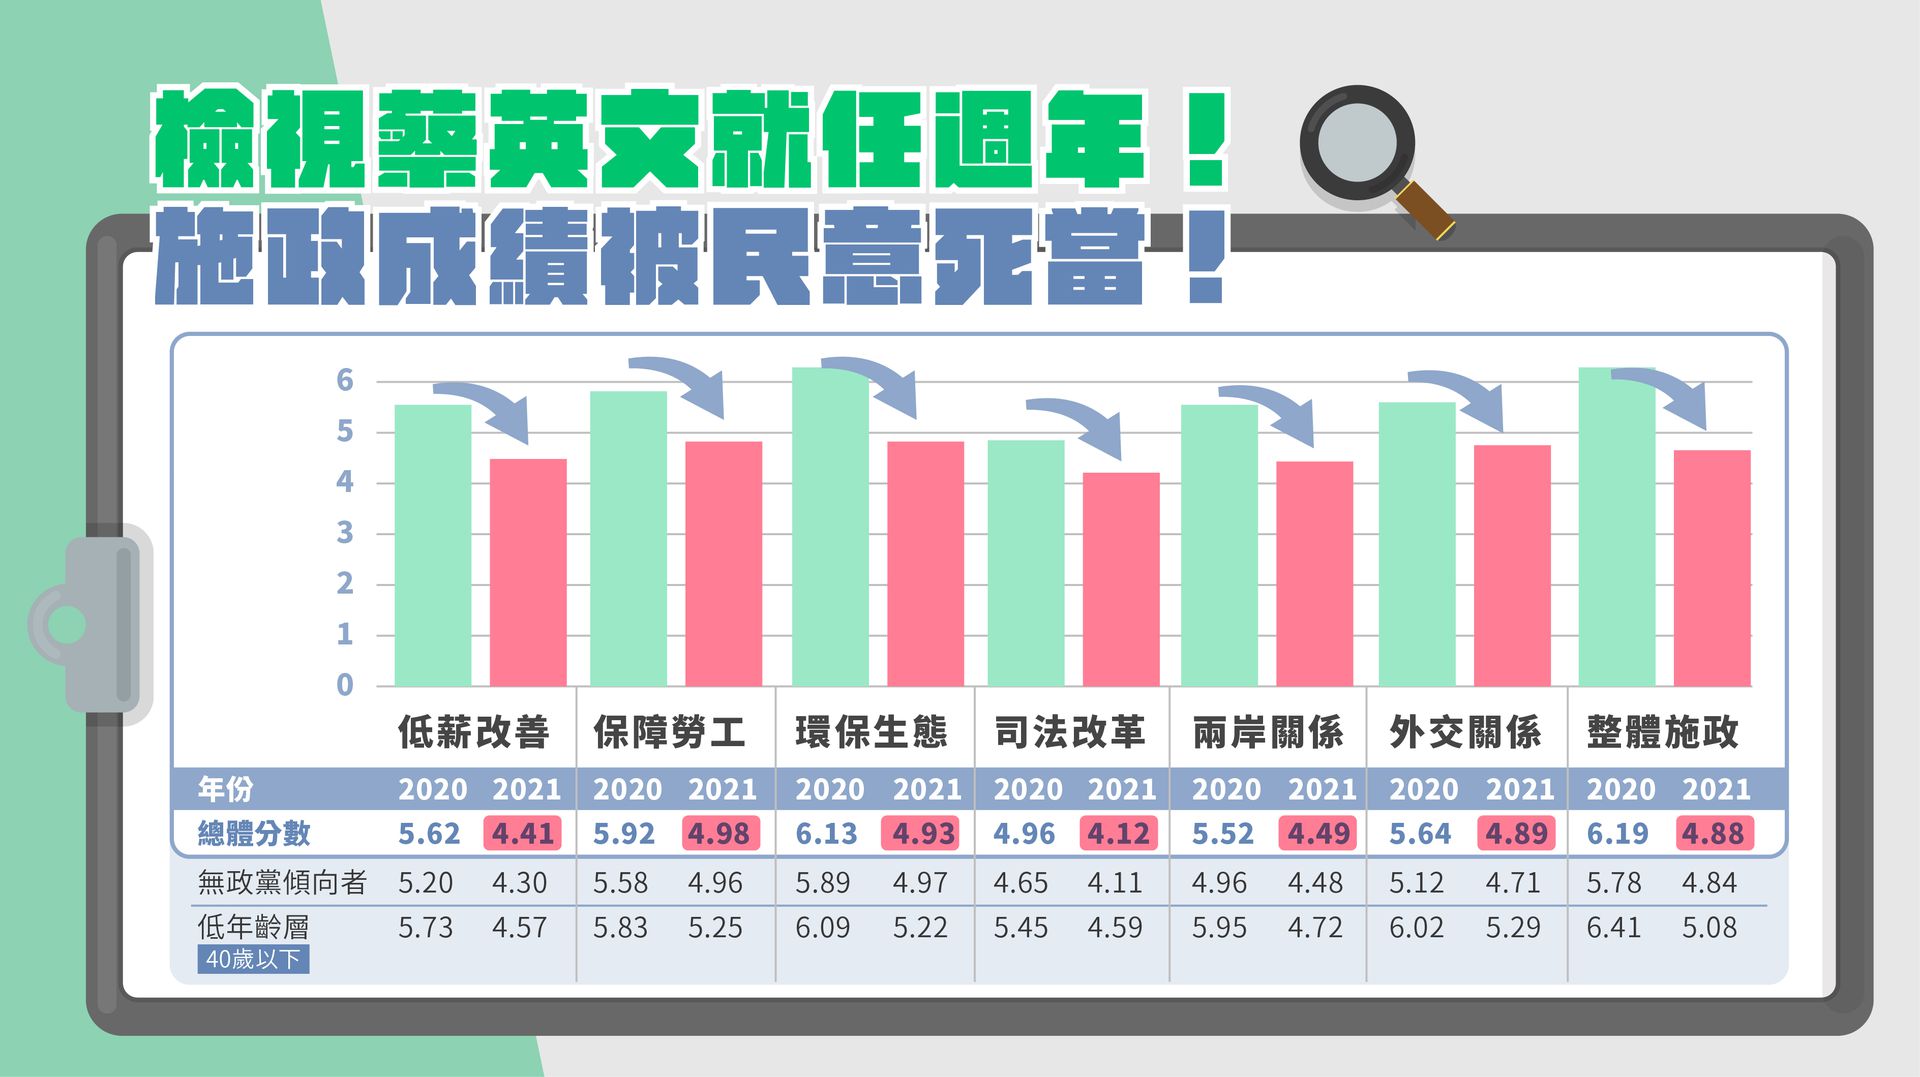 国民党5月27日召开“蔡英文施政总体检，失信于民，几乎死当”记者会，公布委托台媒“TVBS”旗下的民调中心所为的最新调查。根据最新民调指出，在满分为10分的评分下，台湾民意给蔡英文整体施政打了不及格且近乎“死当”的4.88分。 （国民党）